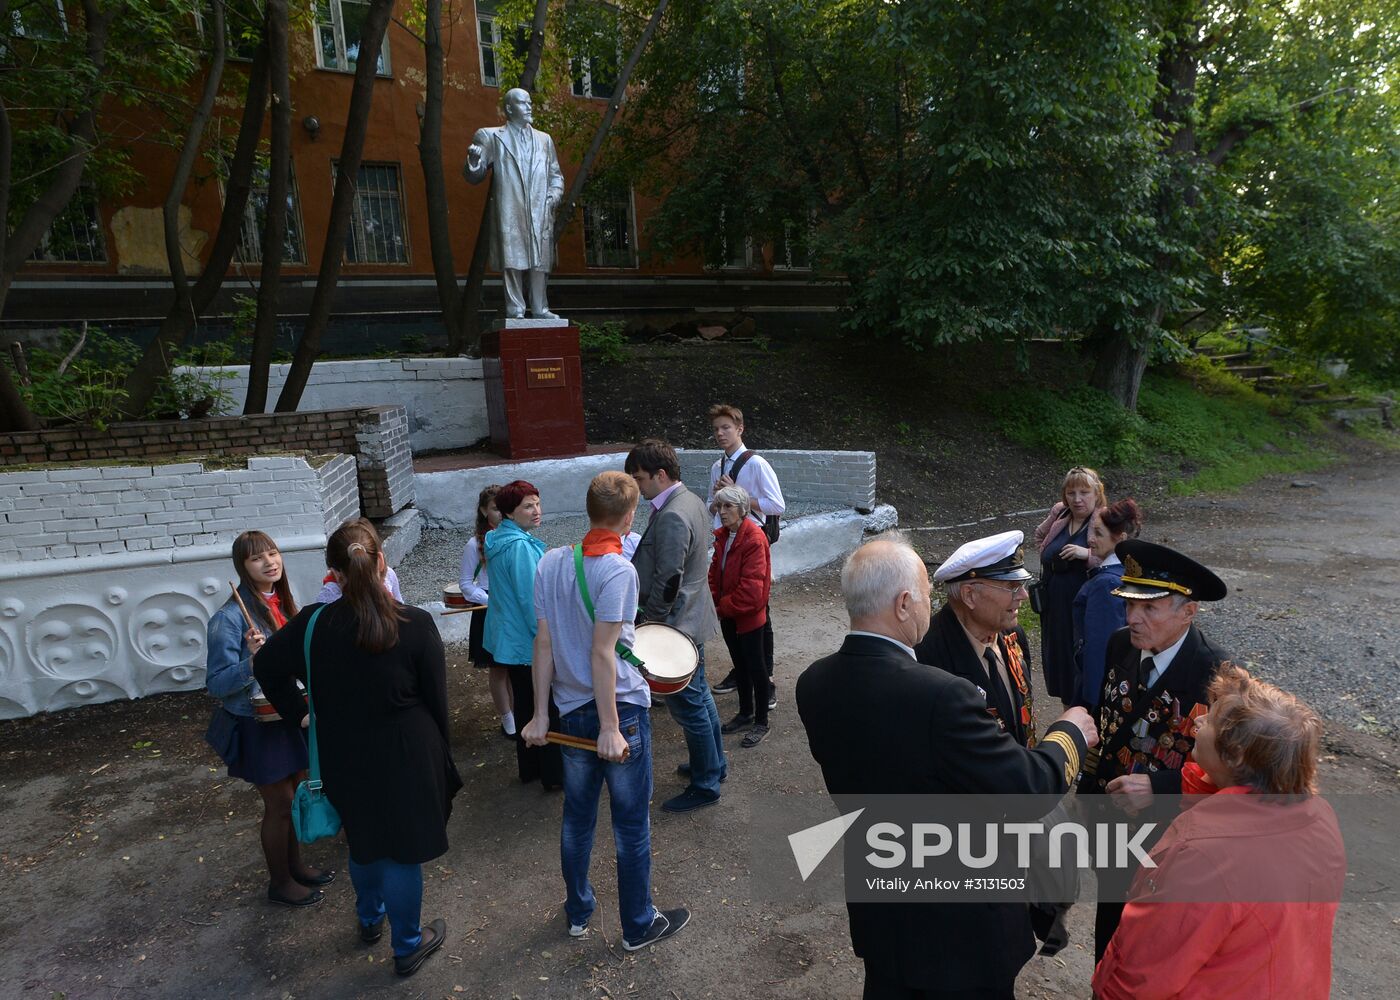 Lenin monument unveiled in Vladivostok